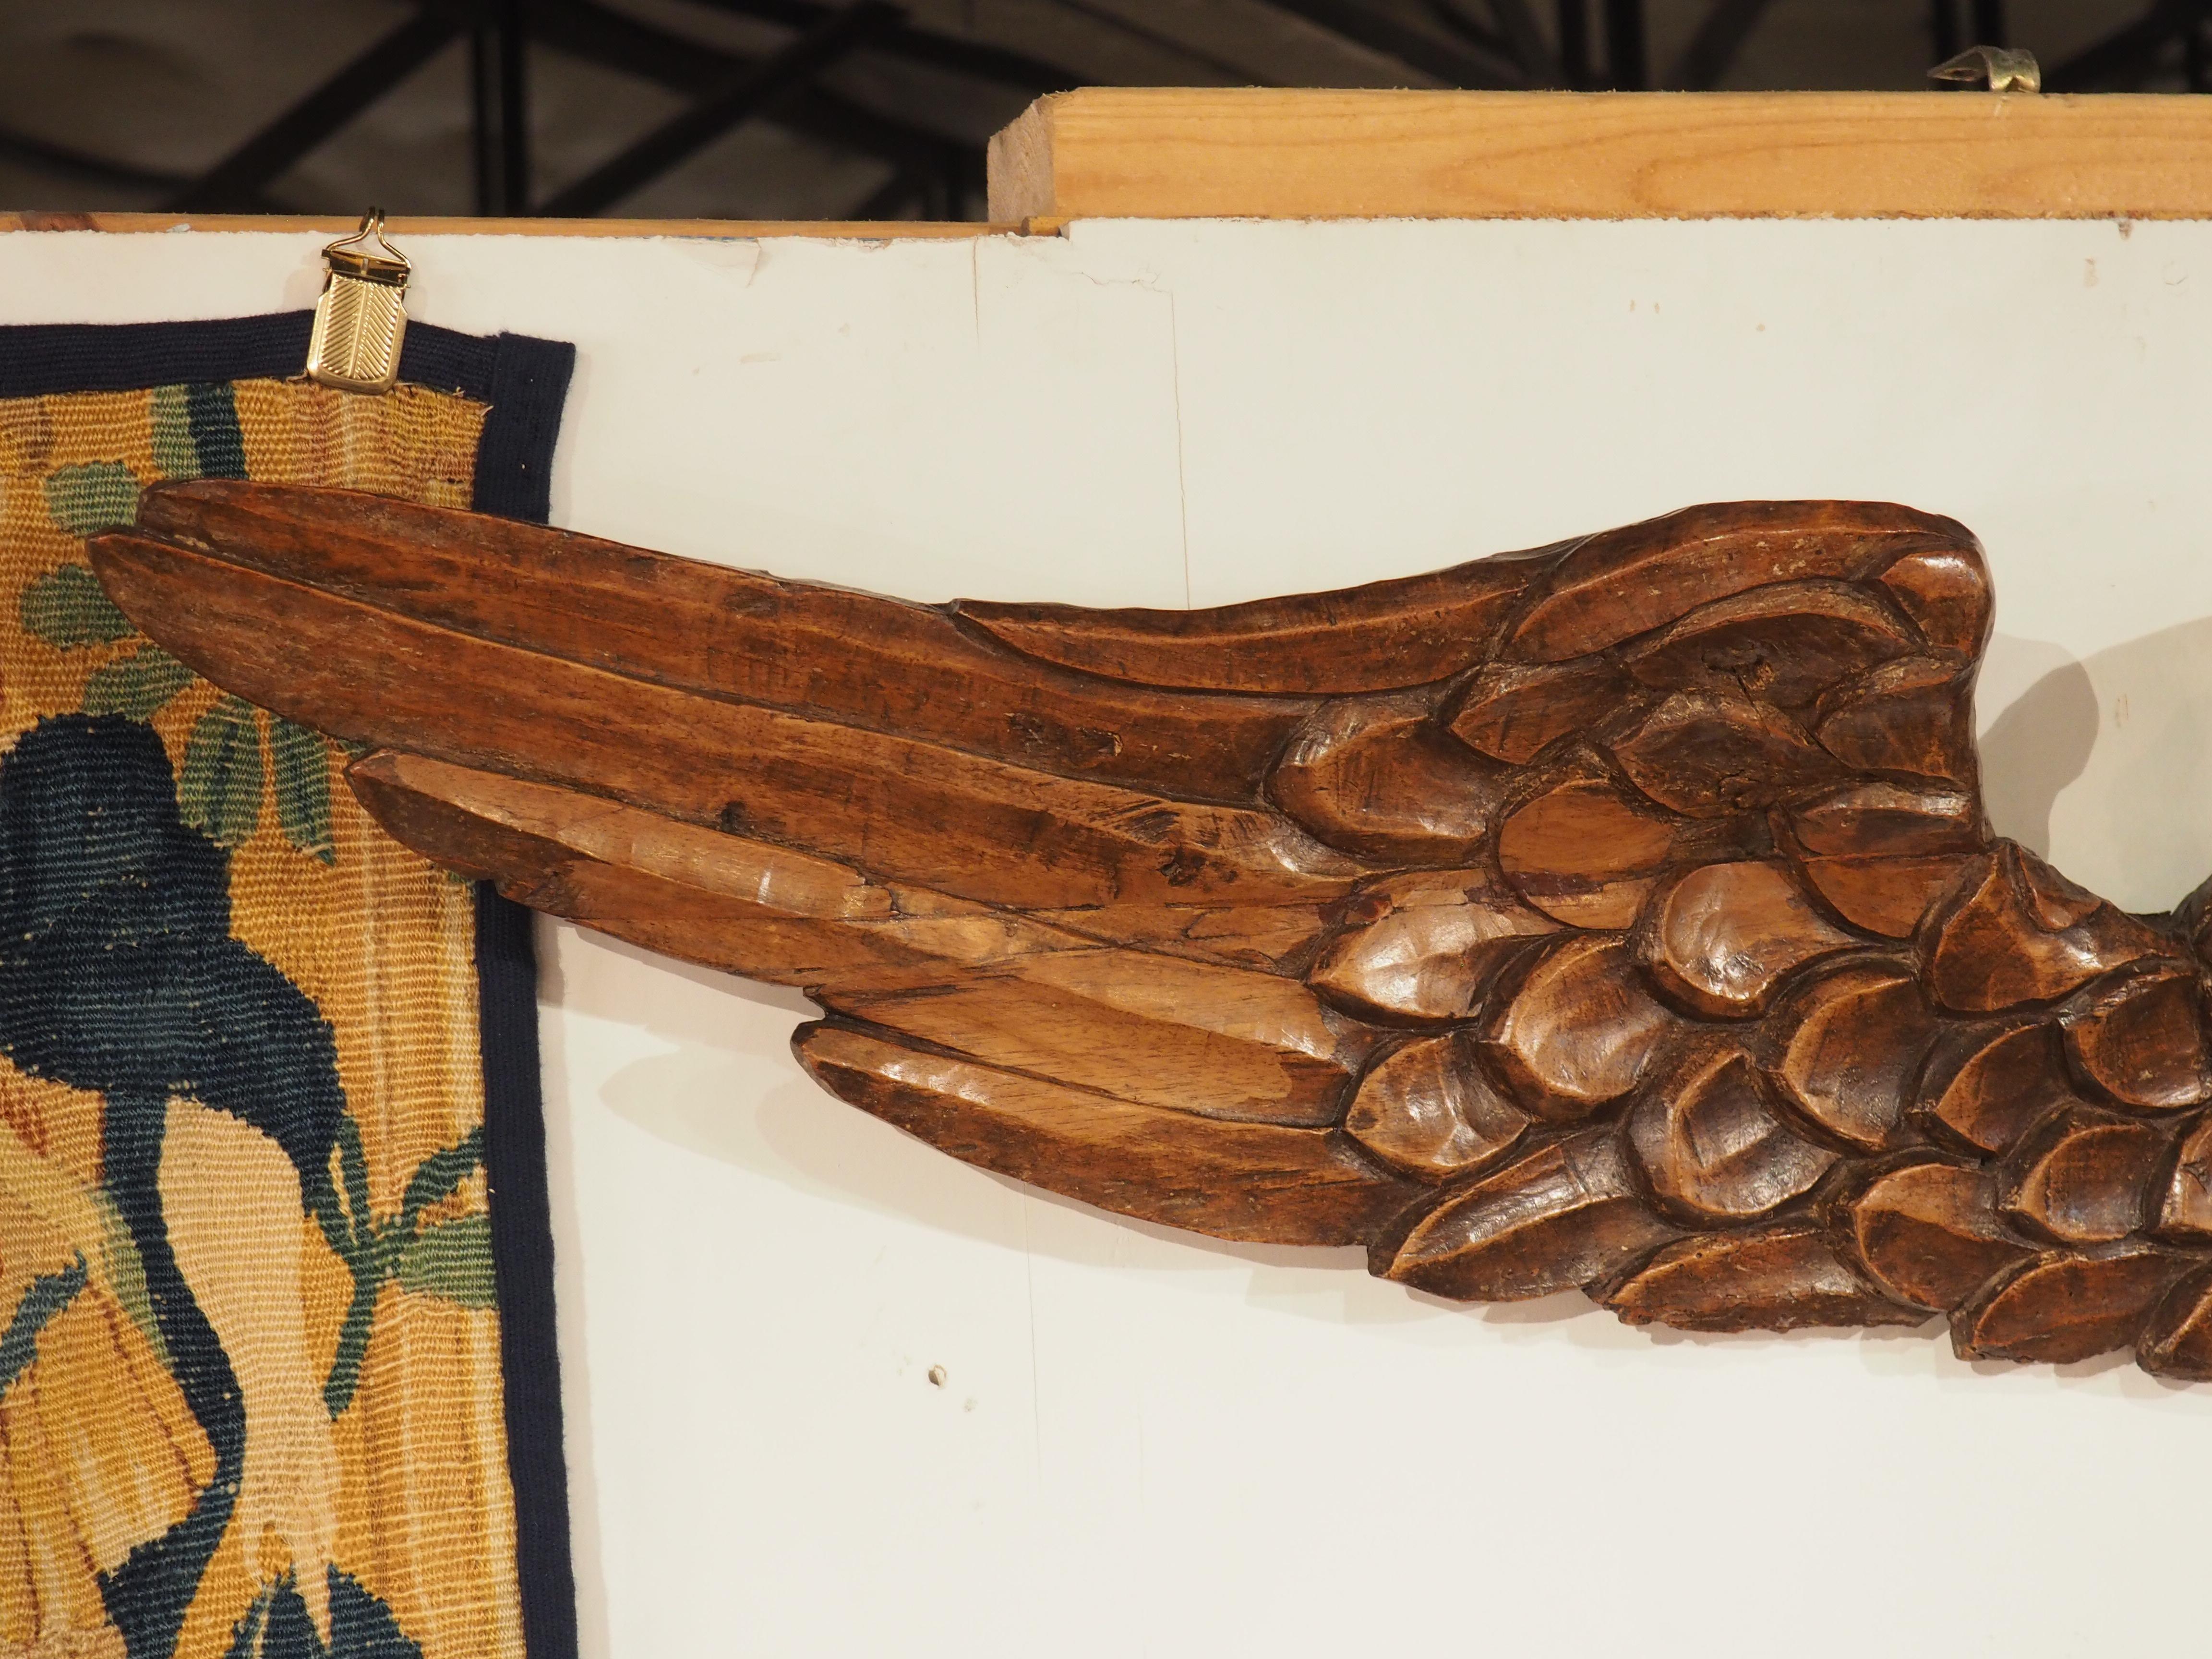 Mit einer Breite von über einem Meter hat diese geflügelte Engelsfigur eine beeindruckende Spannweite. Die um 1600 in Frankreich aus Nussbaumholz handgeschnitzte Skulptur zeigt das unschuldige Gesicht eines Engels mit seitlich ausgebreiteten